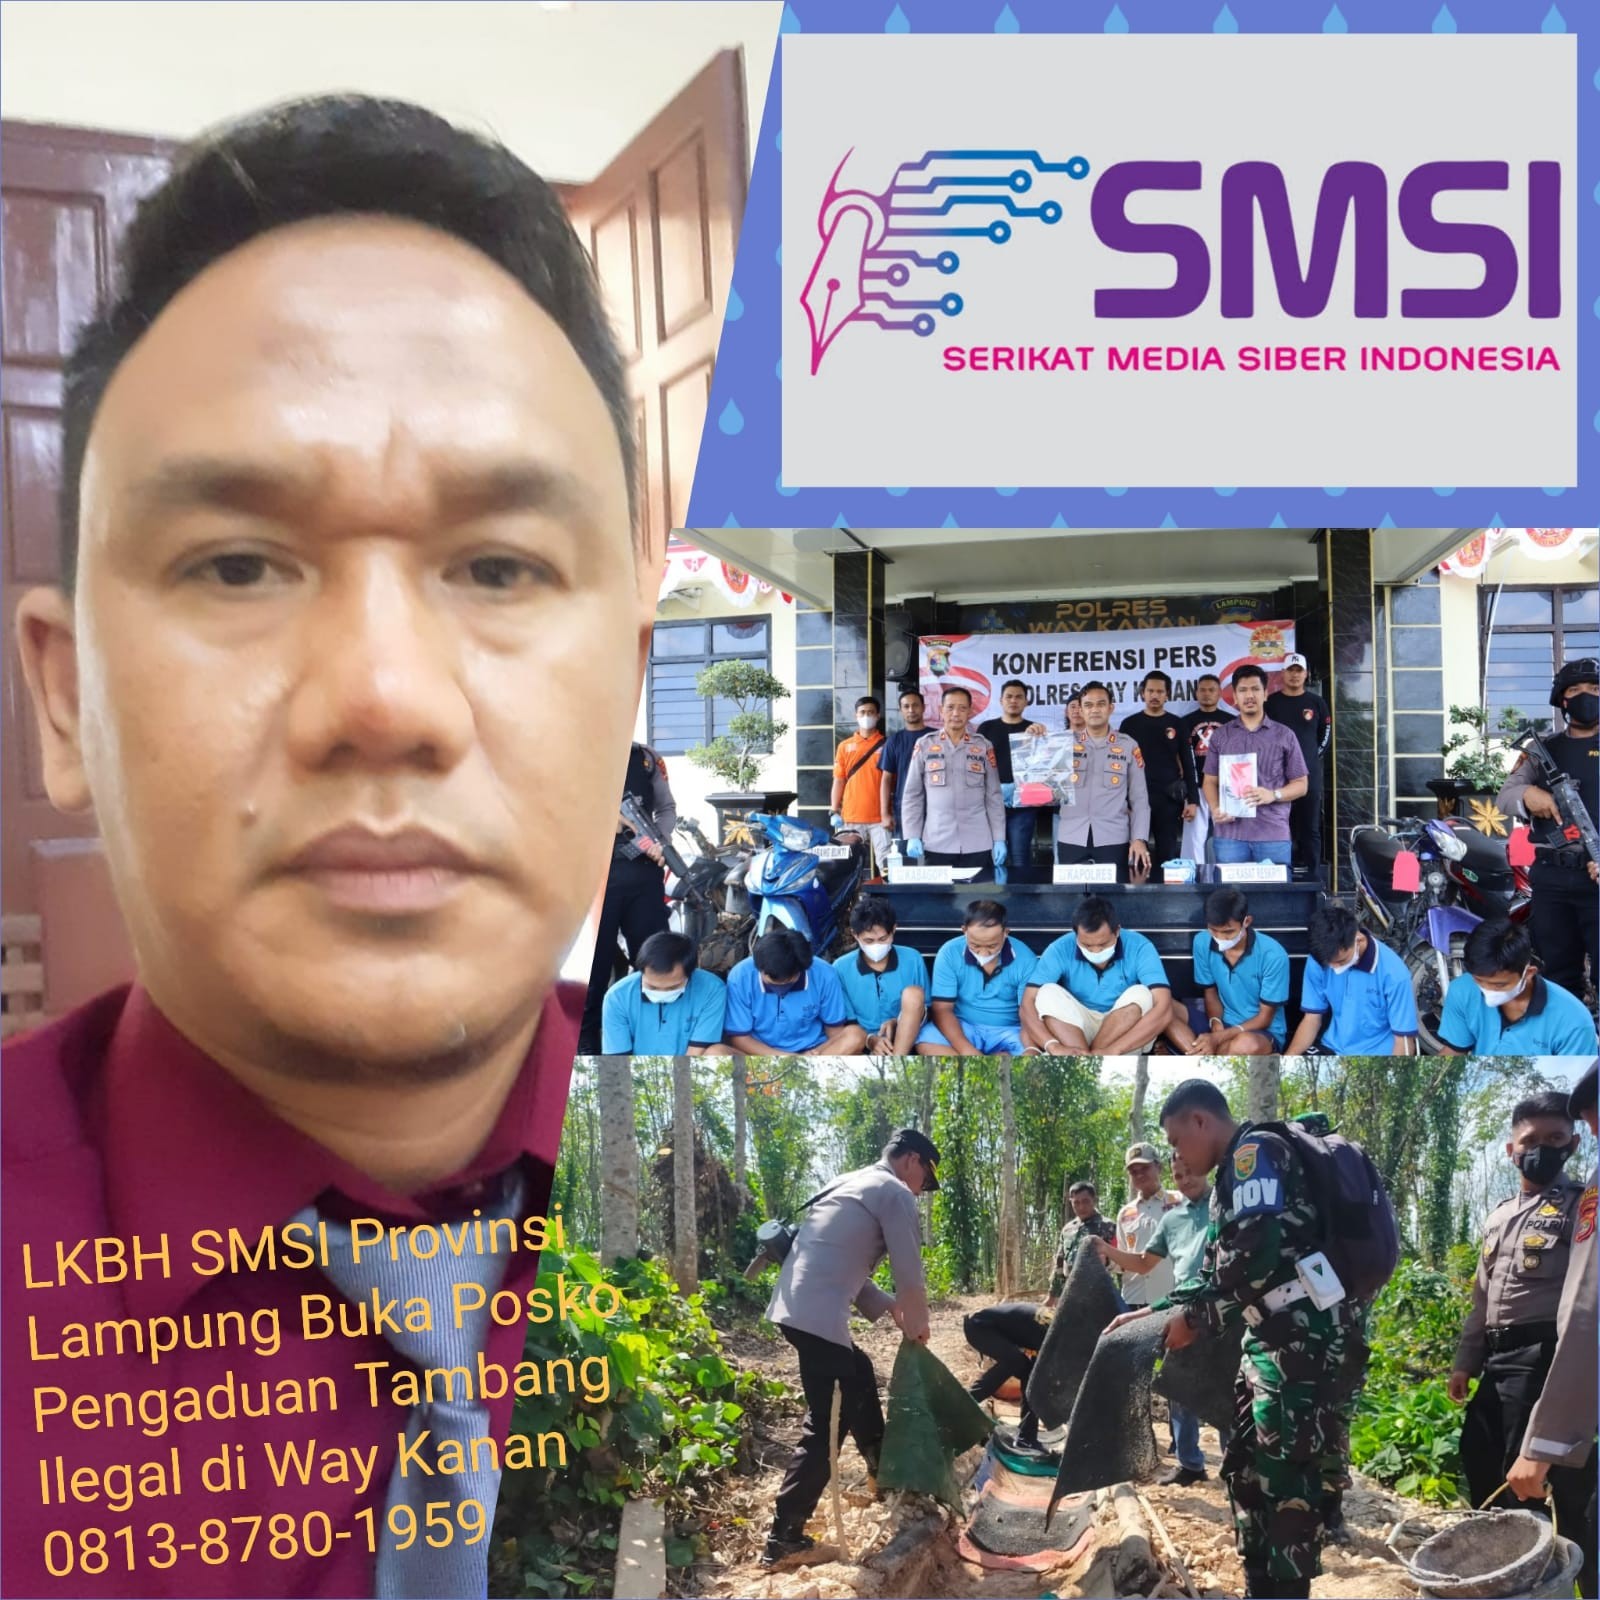 LKBH SMSI Provinsi Lampung Buka Posko pengaduan Tambang Emas Liar di Way Kanan